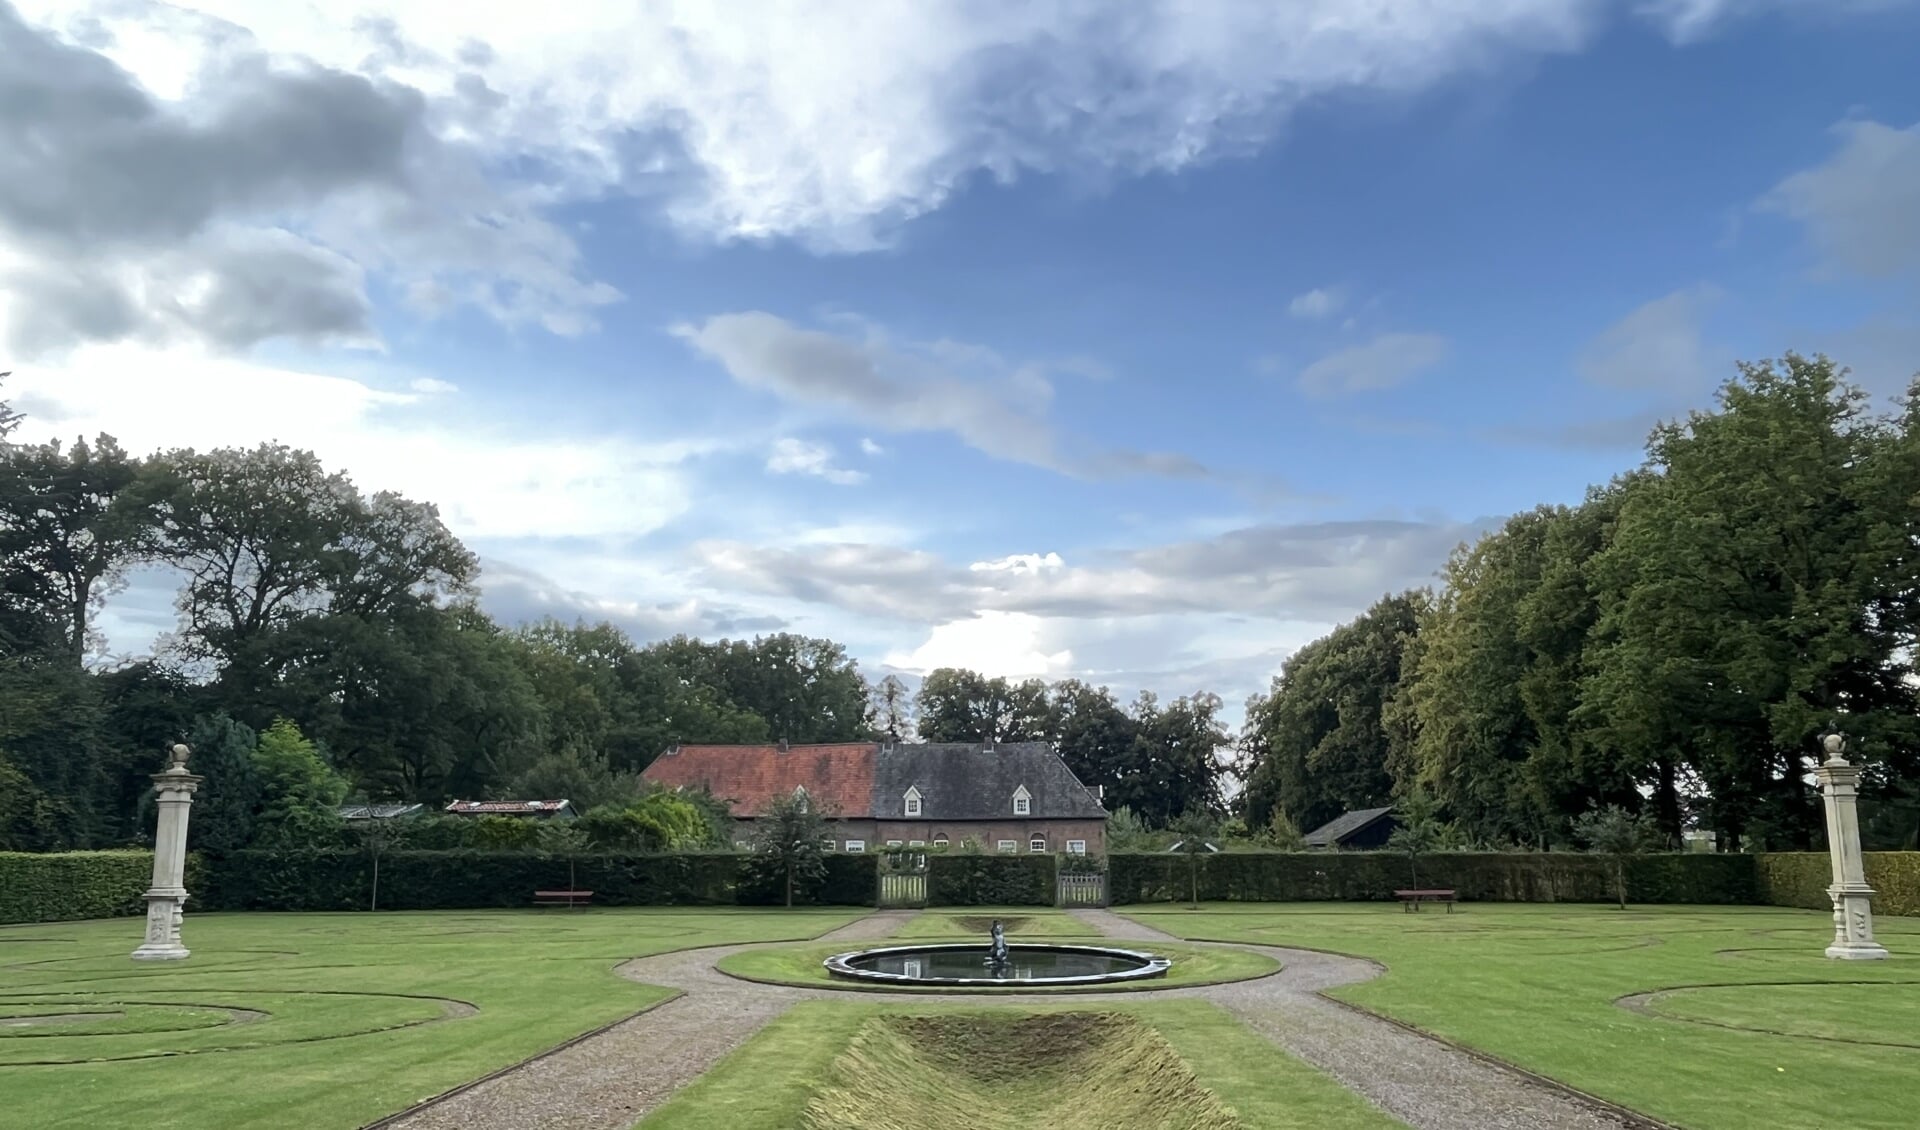 De tuin bij Huis Bergh wordt gerestaureerd vanaf de Kaatsbaan. Foto: Karin van der Velden